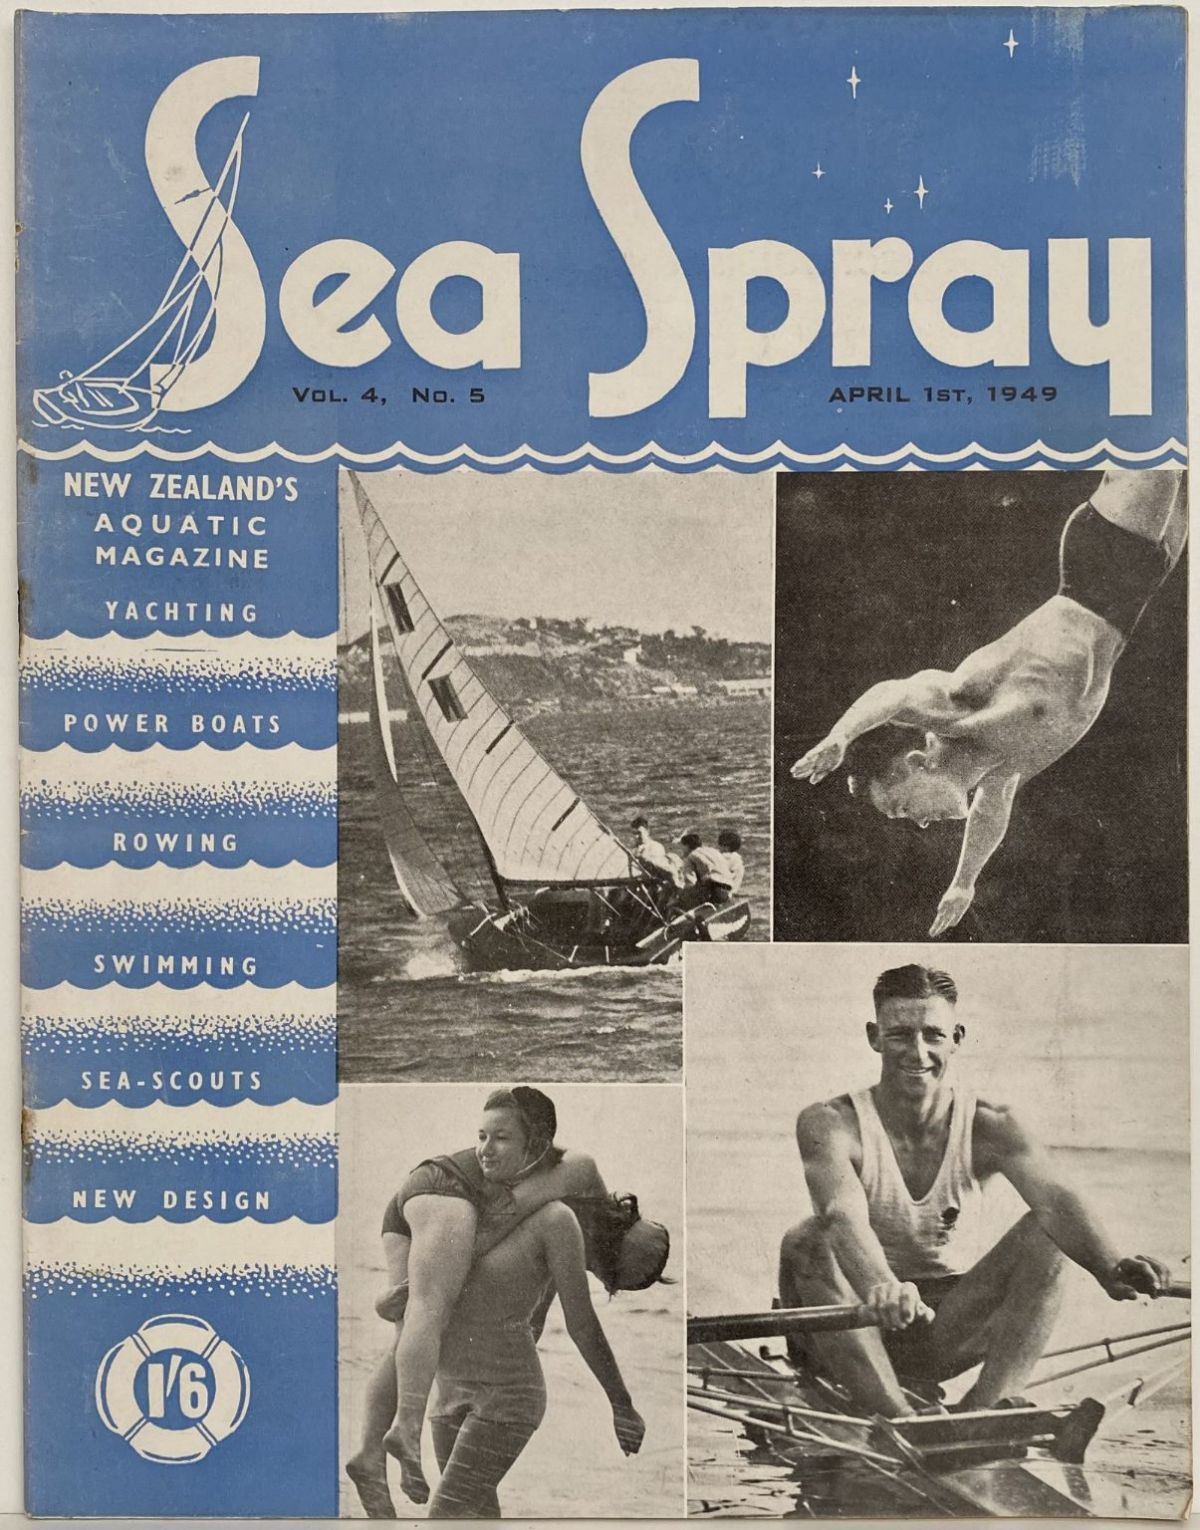 VINTAGE MAGAZINE: Sea Spray - Vol. 4, No. 5 - April 1949